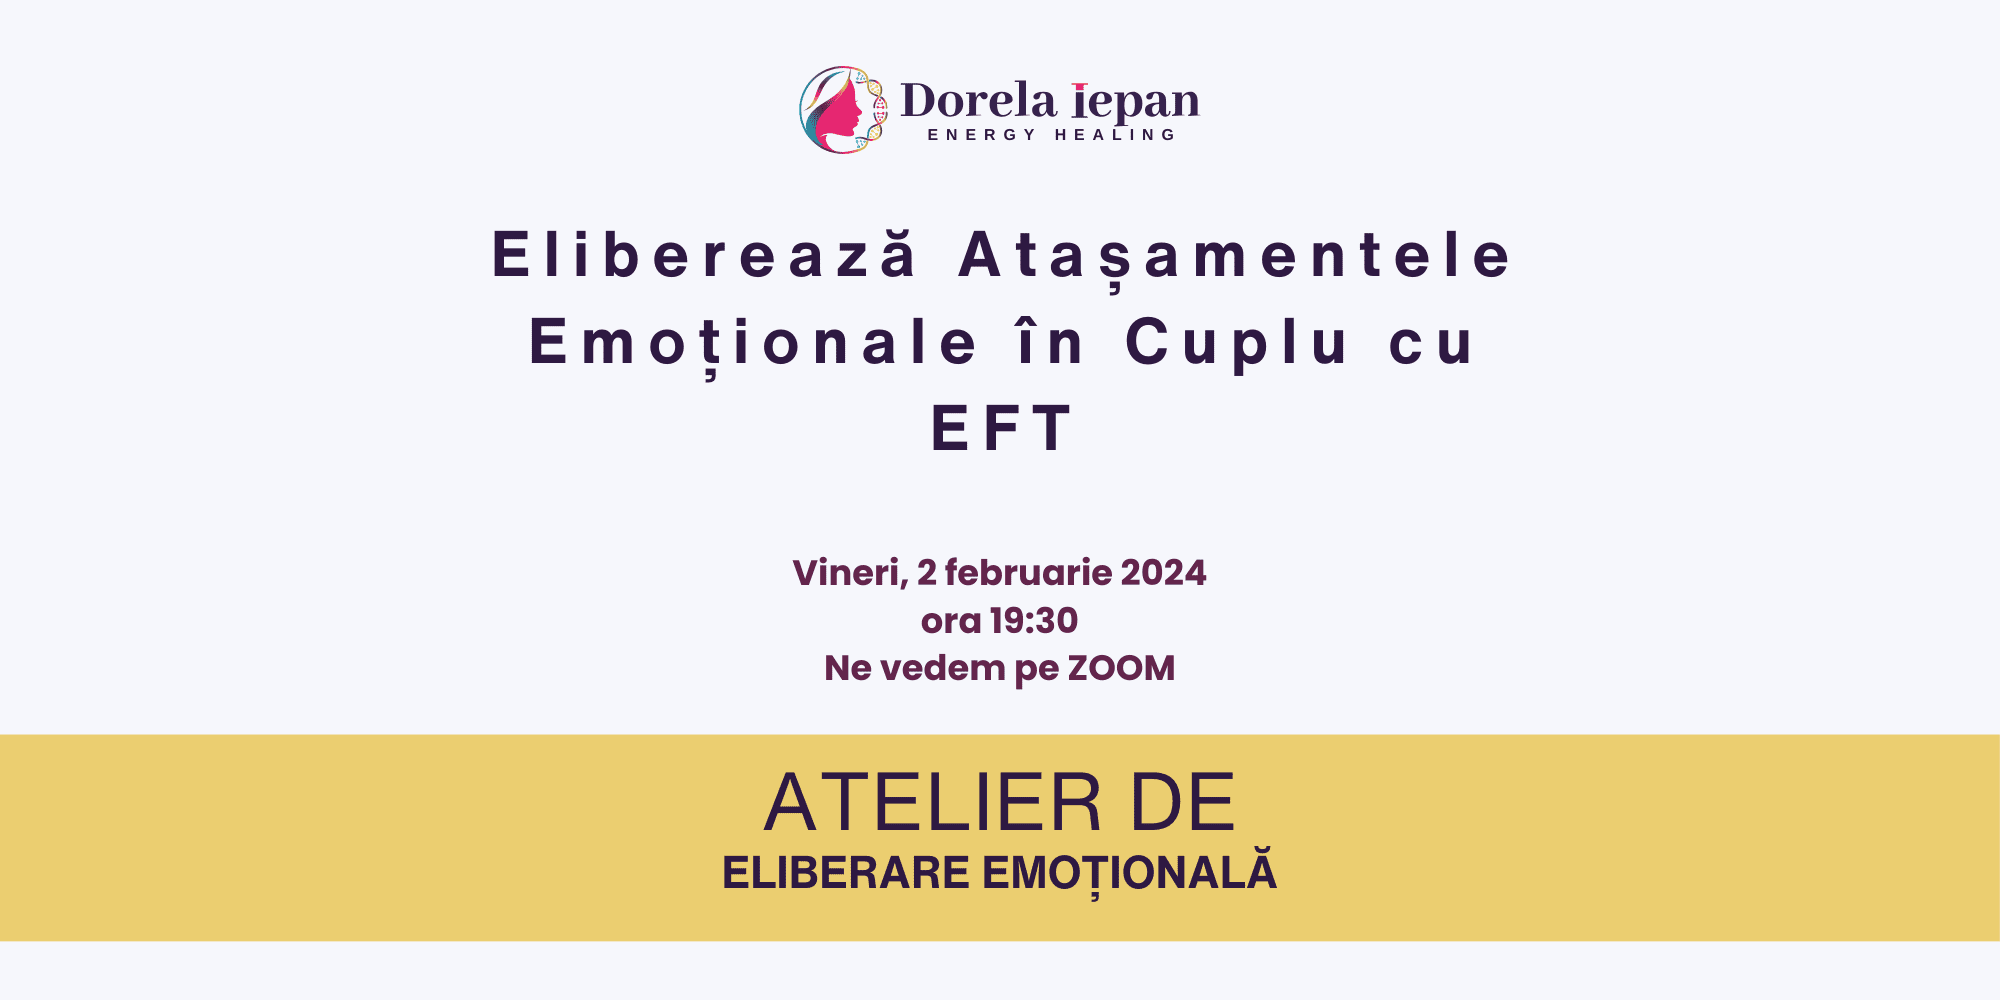 Eliberează Atasamentele Emotionale în Cuplu cu EFT